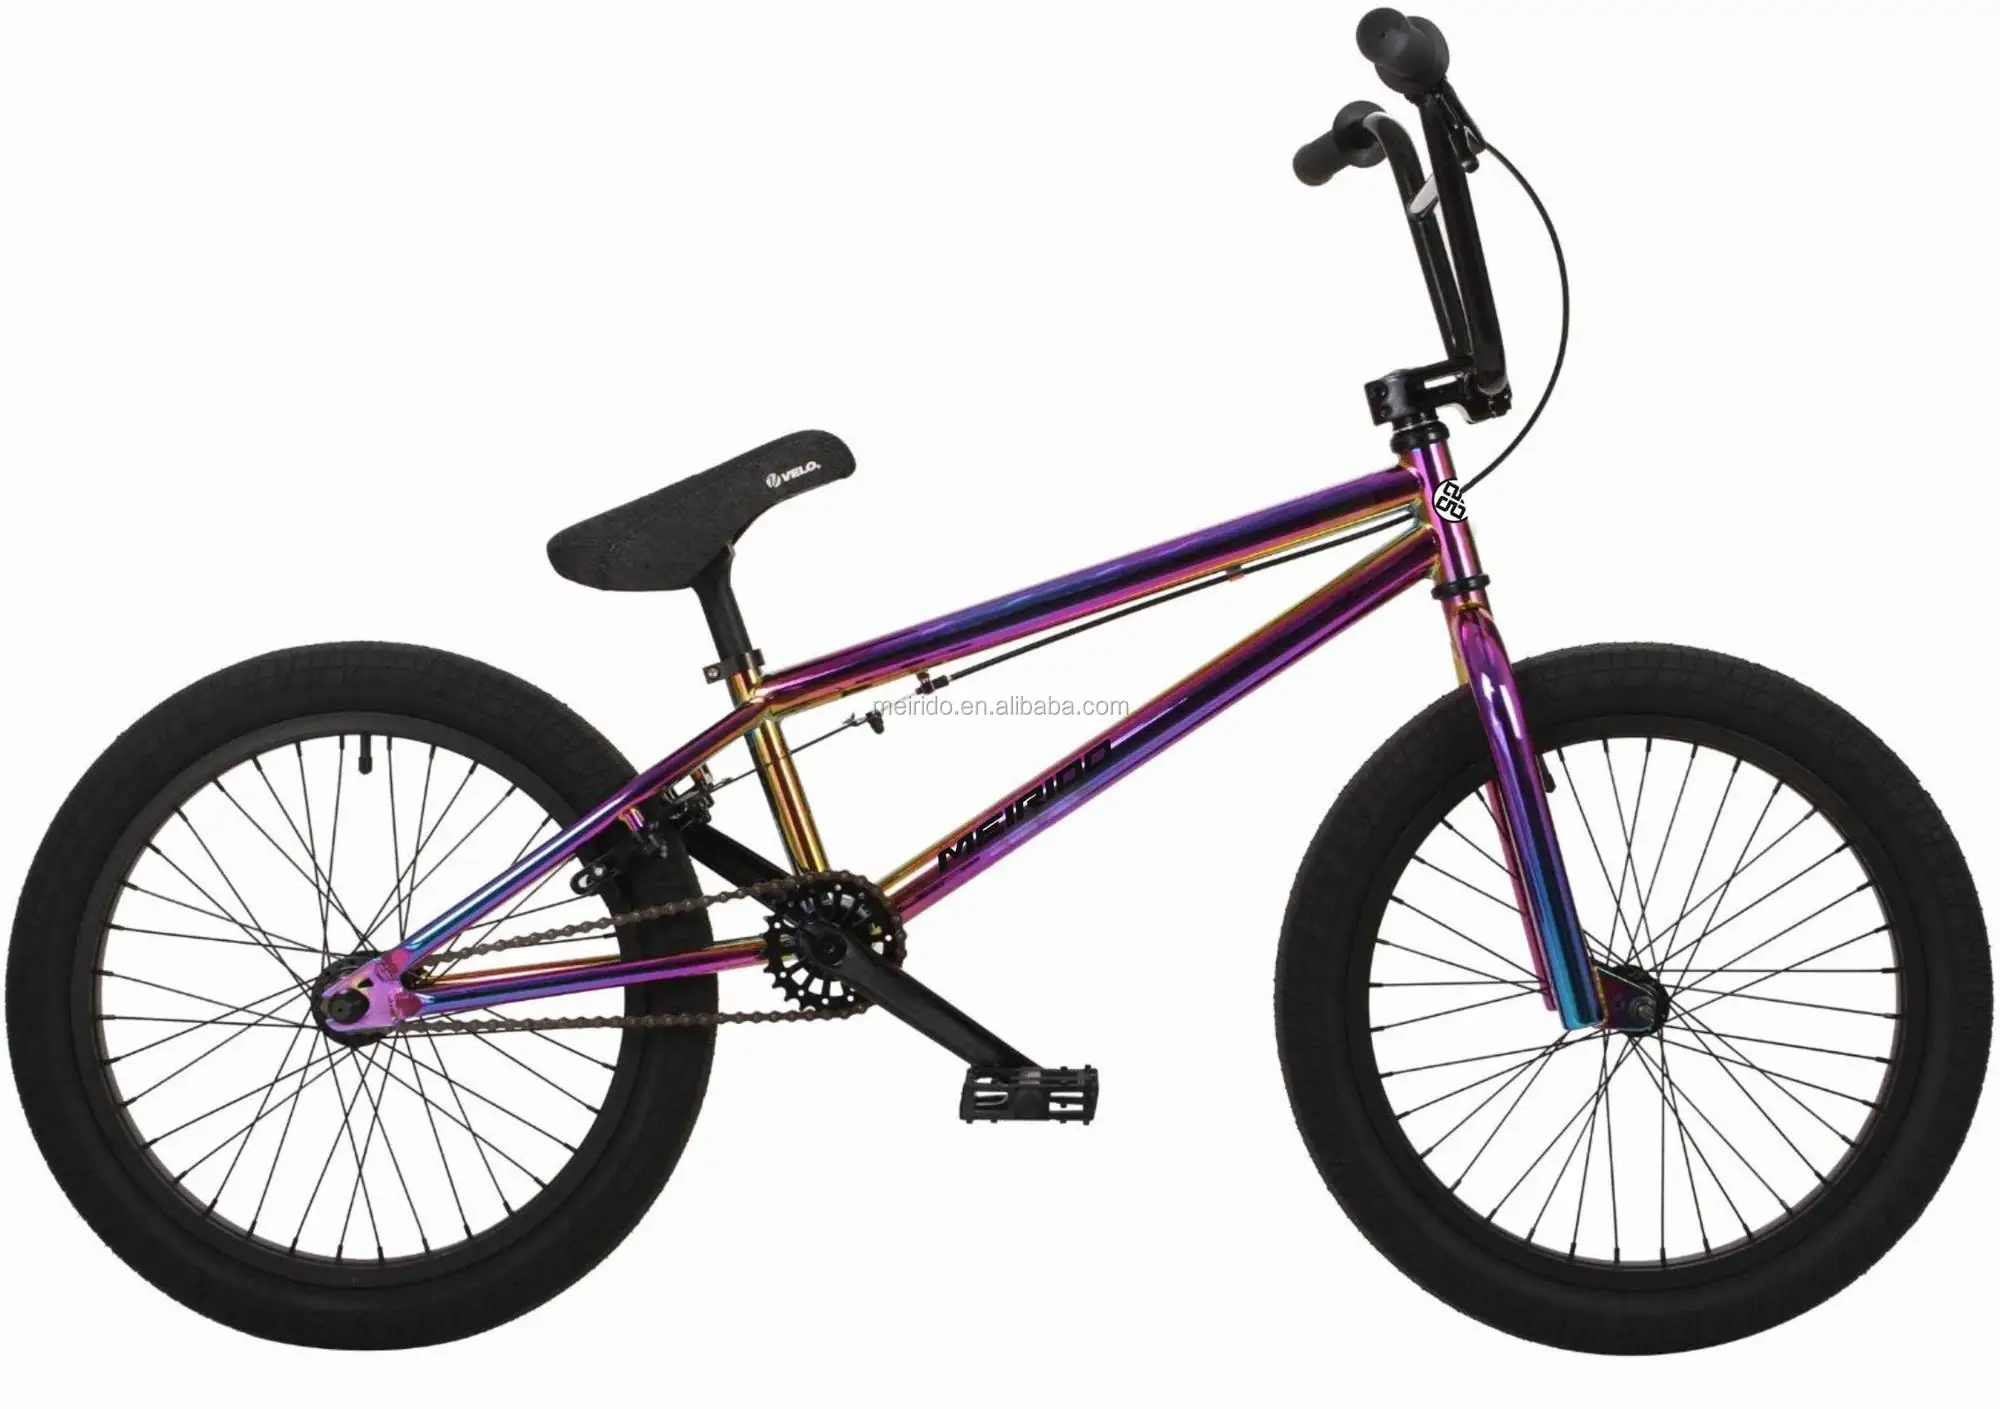 15 inch bmx bike